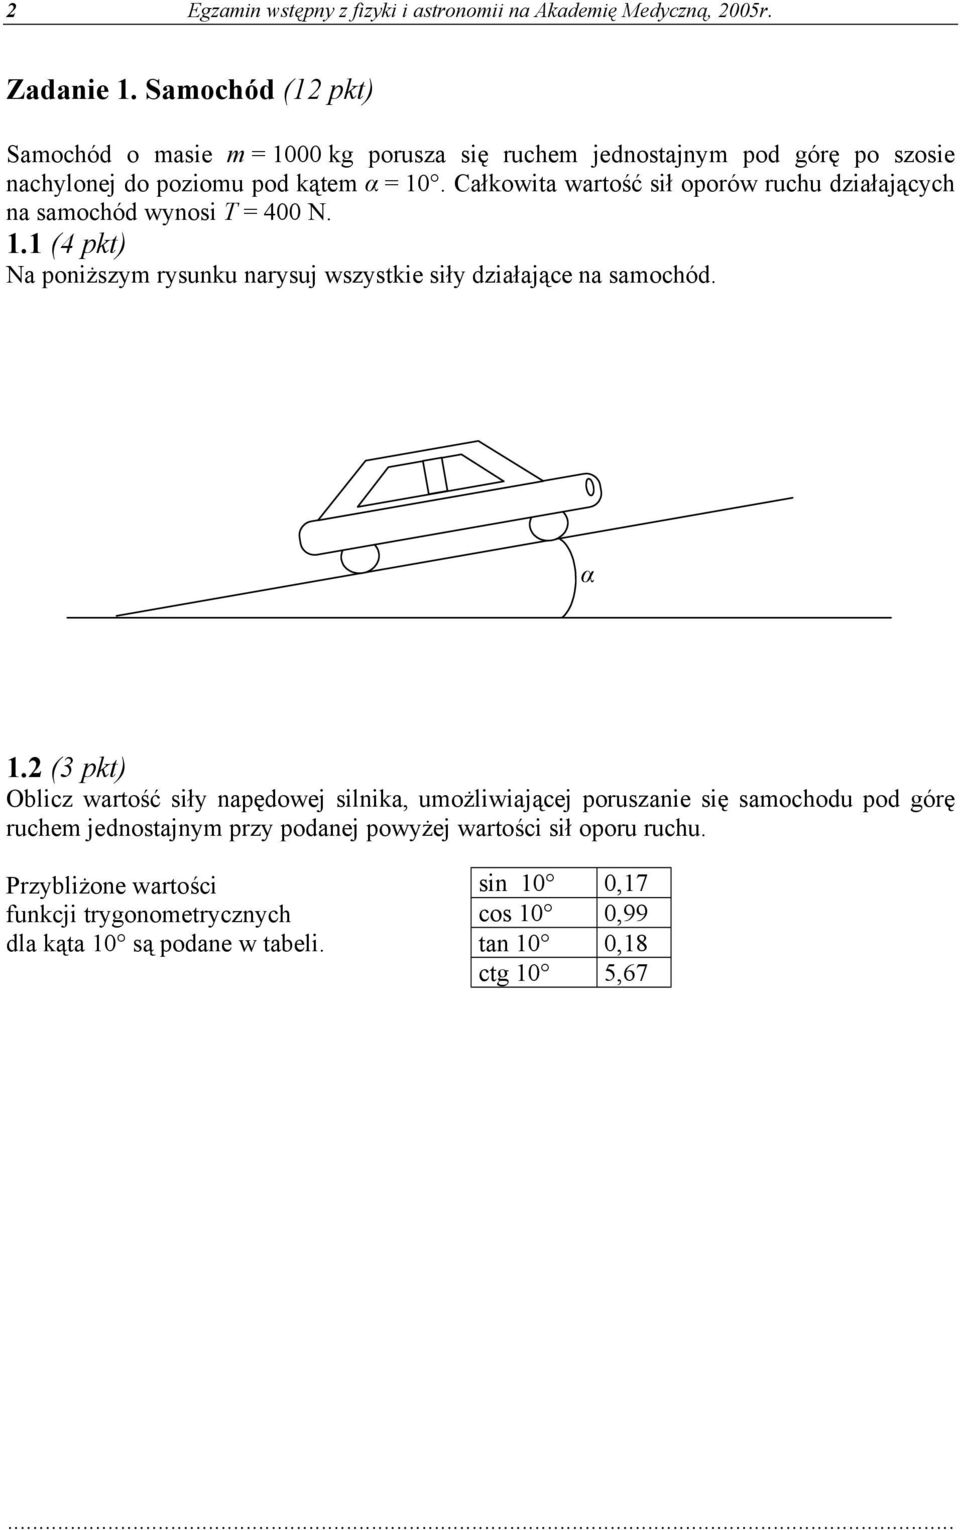 Całkowita wartość sił oporów ruchu działających na samochód wynosi T = 400 N. 1.1 (4 pkt) Na poniższym rysunku narysuj wszystkie siły działające na samochód. α 1.